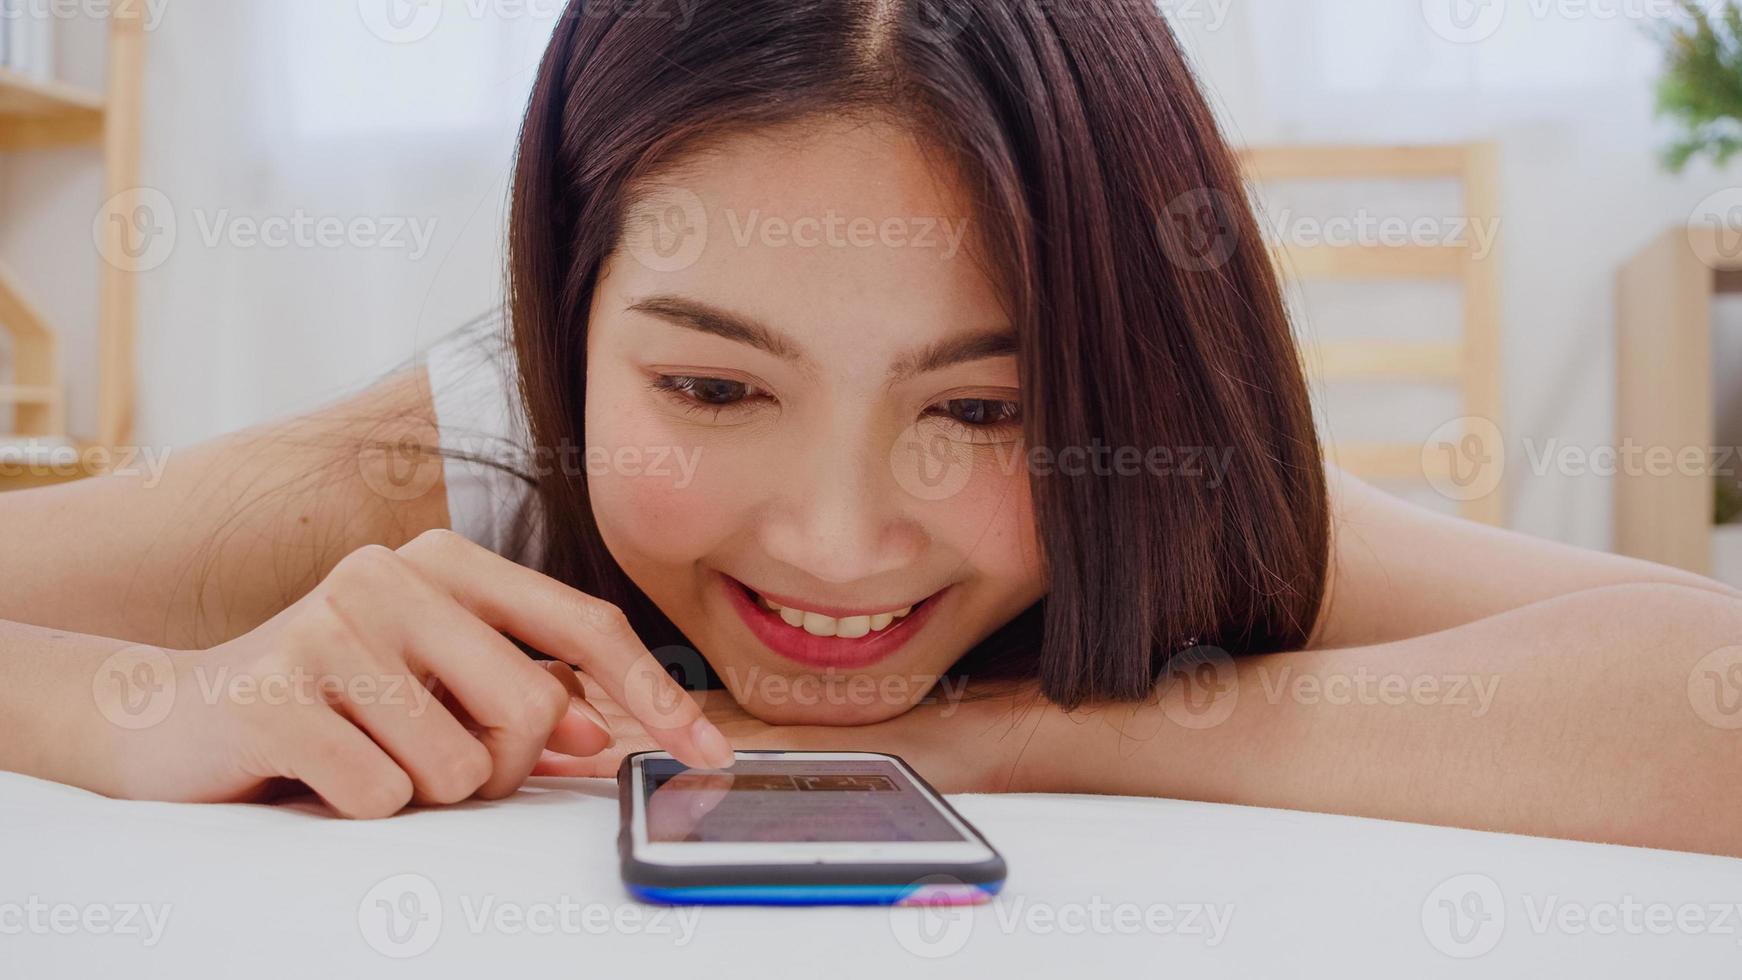 giovane donna asiatica che usa lo smartphone controllando i social media sentendosi felice sorridente mentre si trova sul letto dopo essersi svegliata al mattino, bella ragazza giapponese attraente sorridente si rilassa in camera da letto a casa. foto